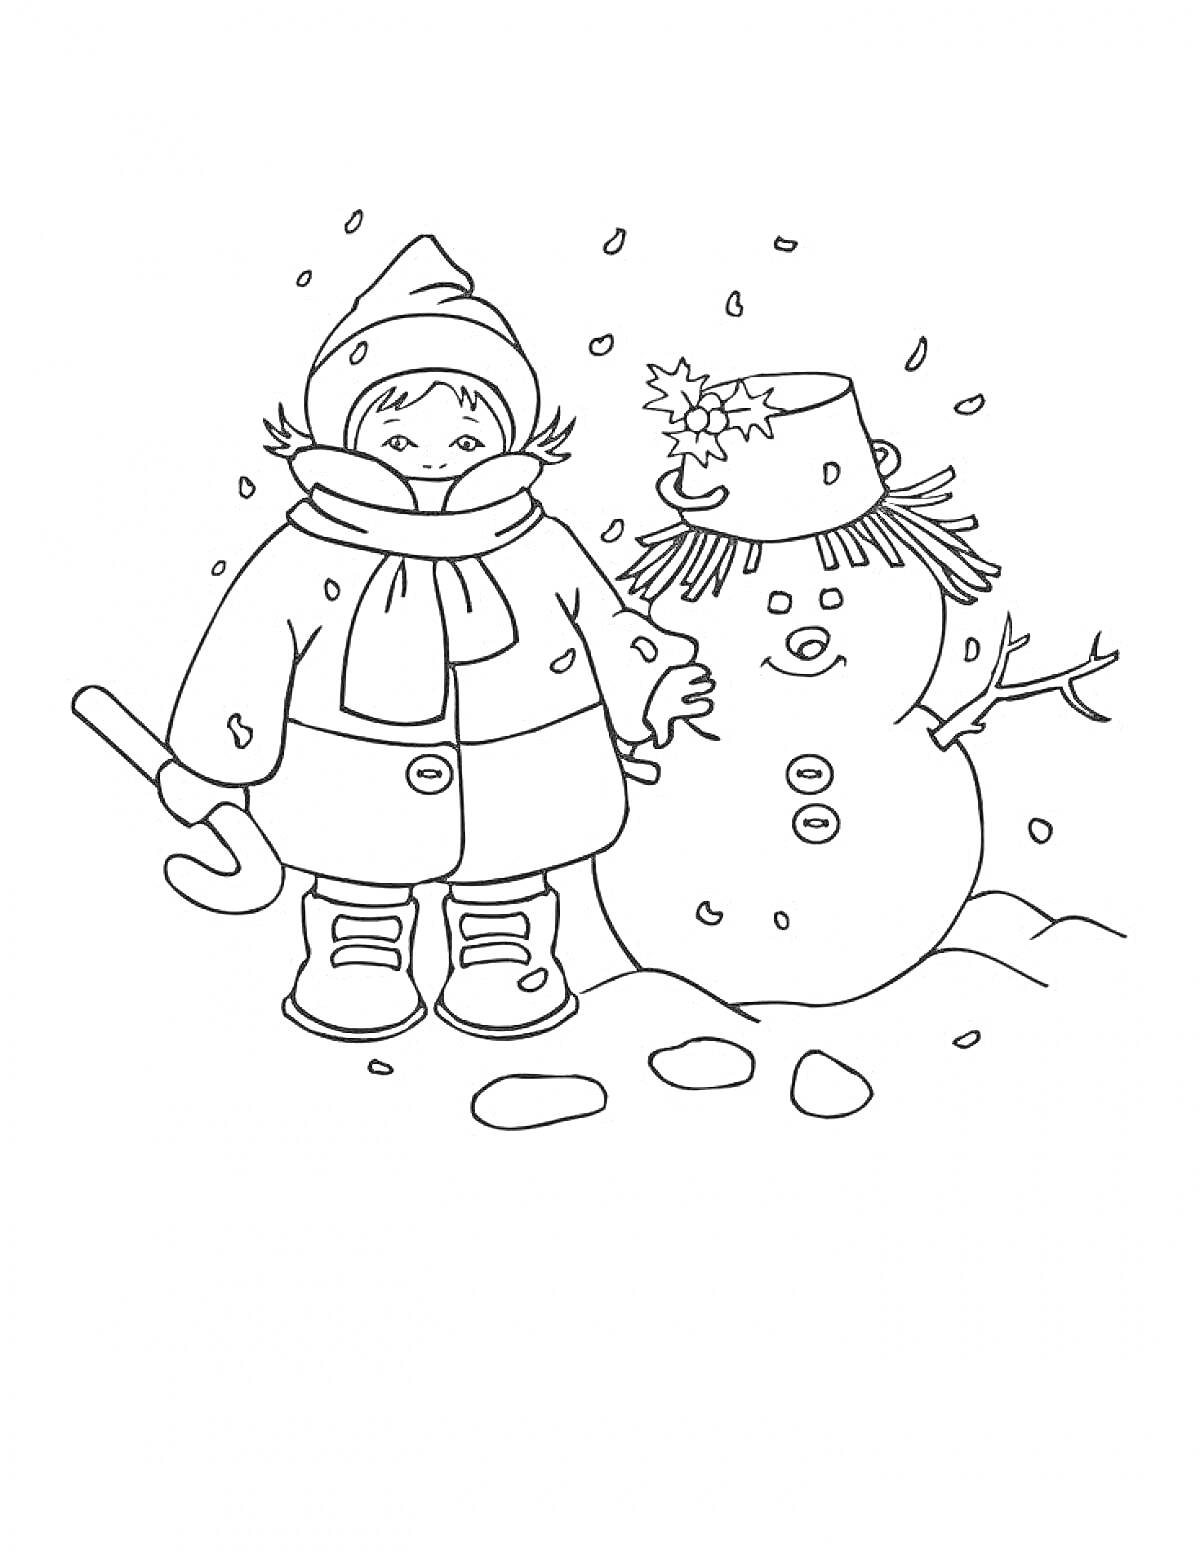 Раскраска Ребенок в зимней одежде рядом со снеговиком с ведром на голове и ветками вместо рук, падает снег